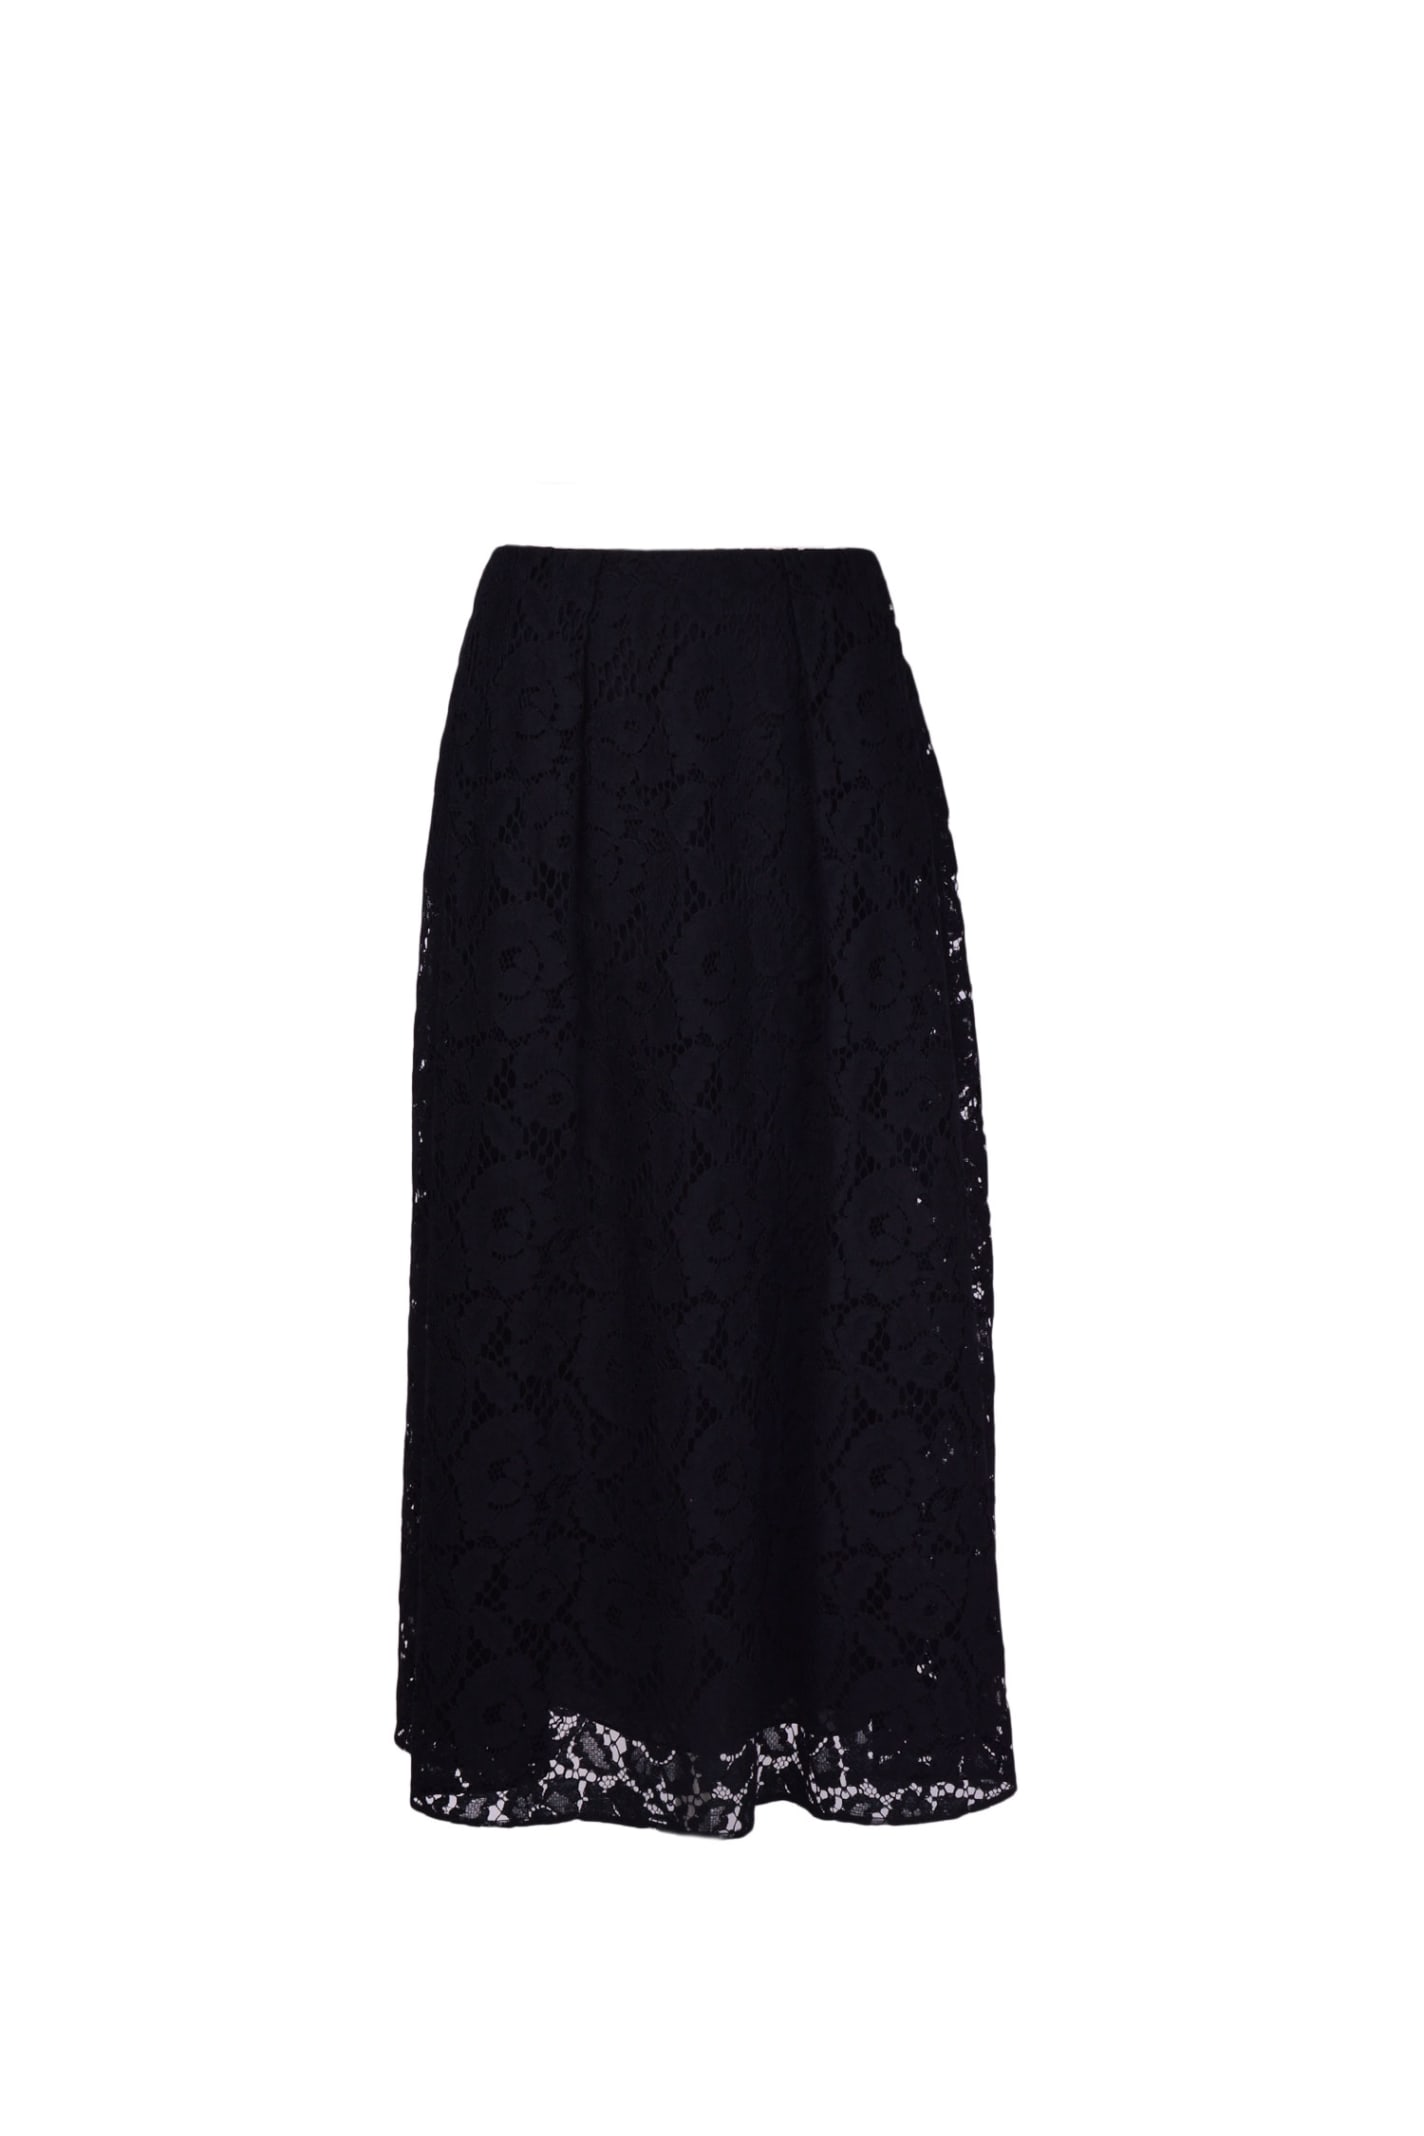 Elie Saab Long Skirt In Black